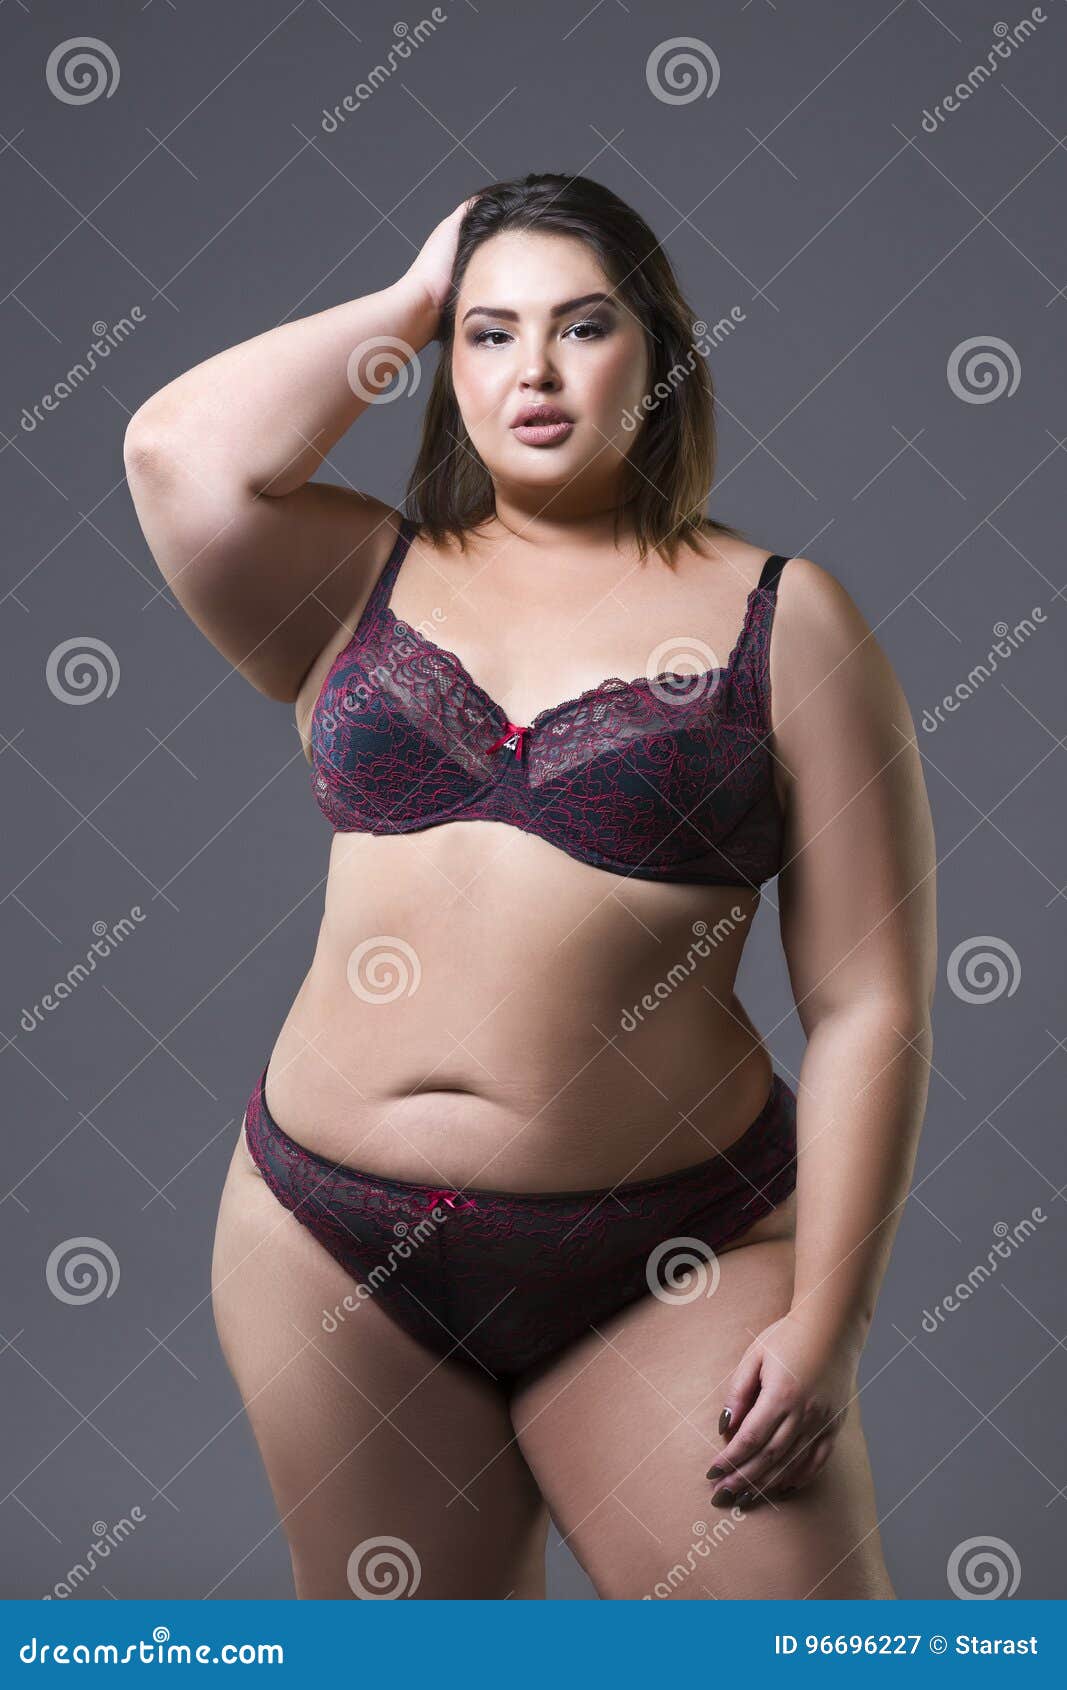 abigail grace recommends Fat Girls In Underwear